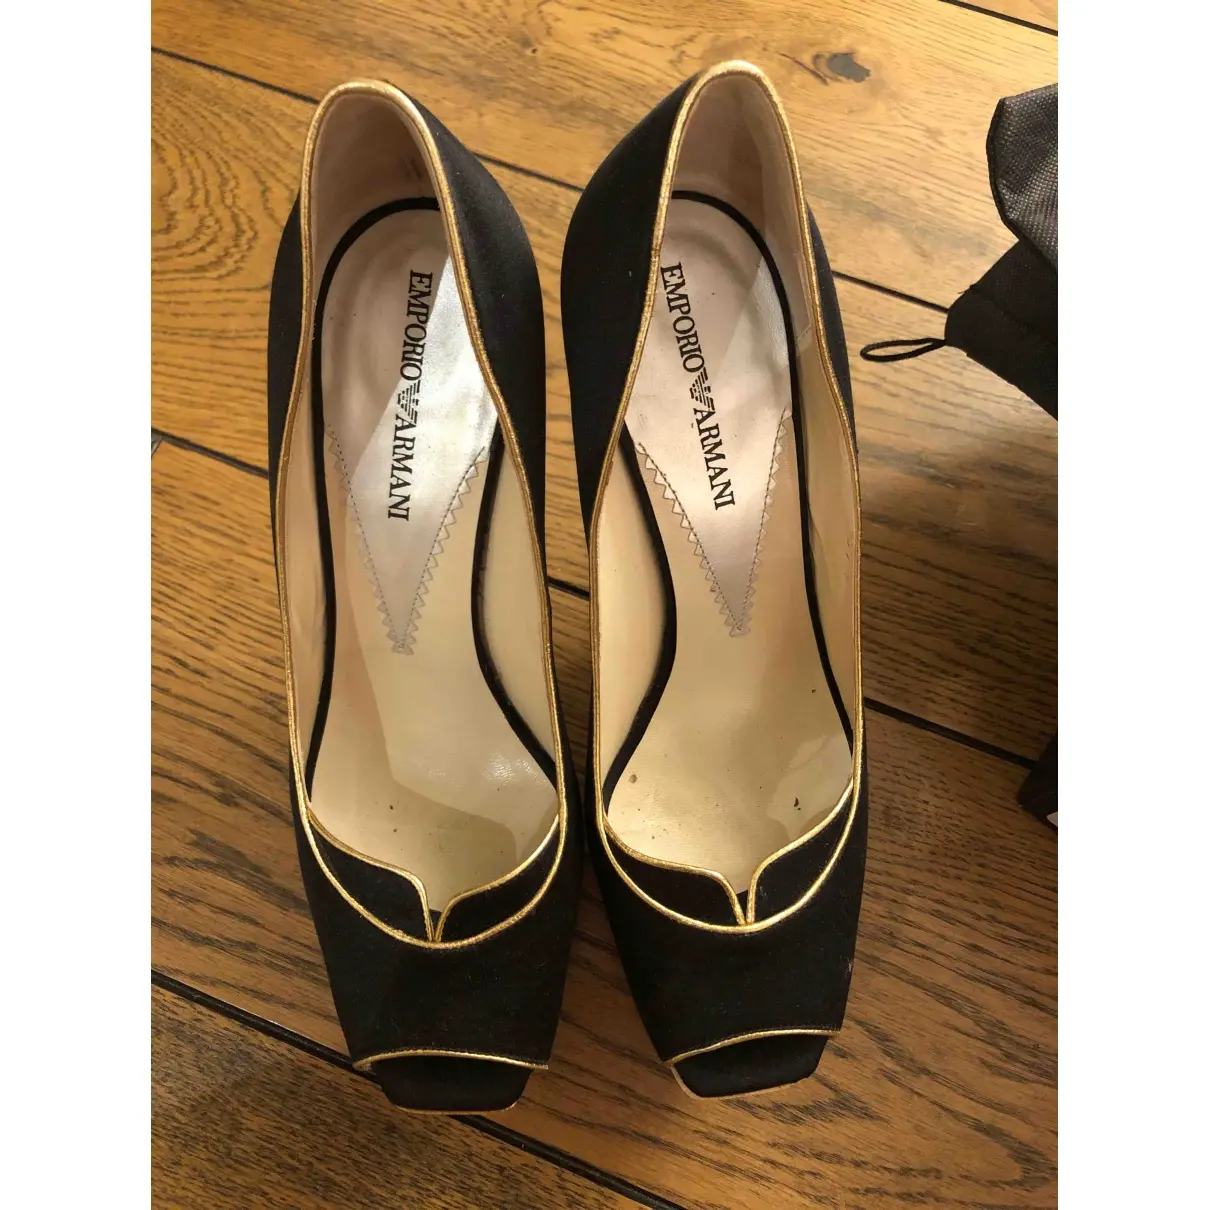 Emporio Armani Cloth heels for sale